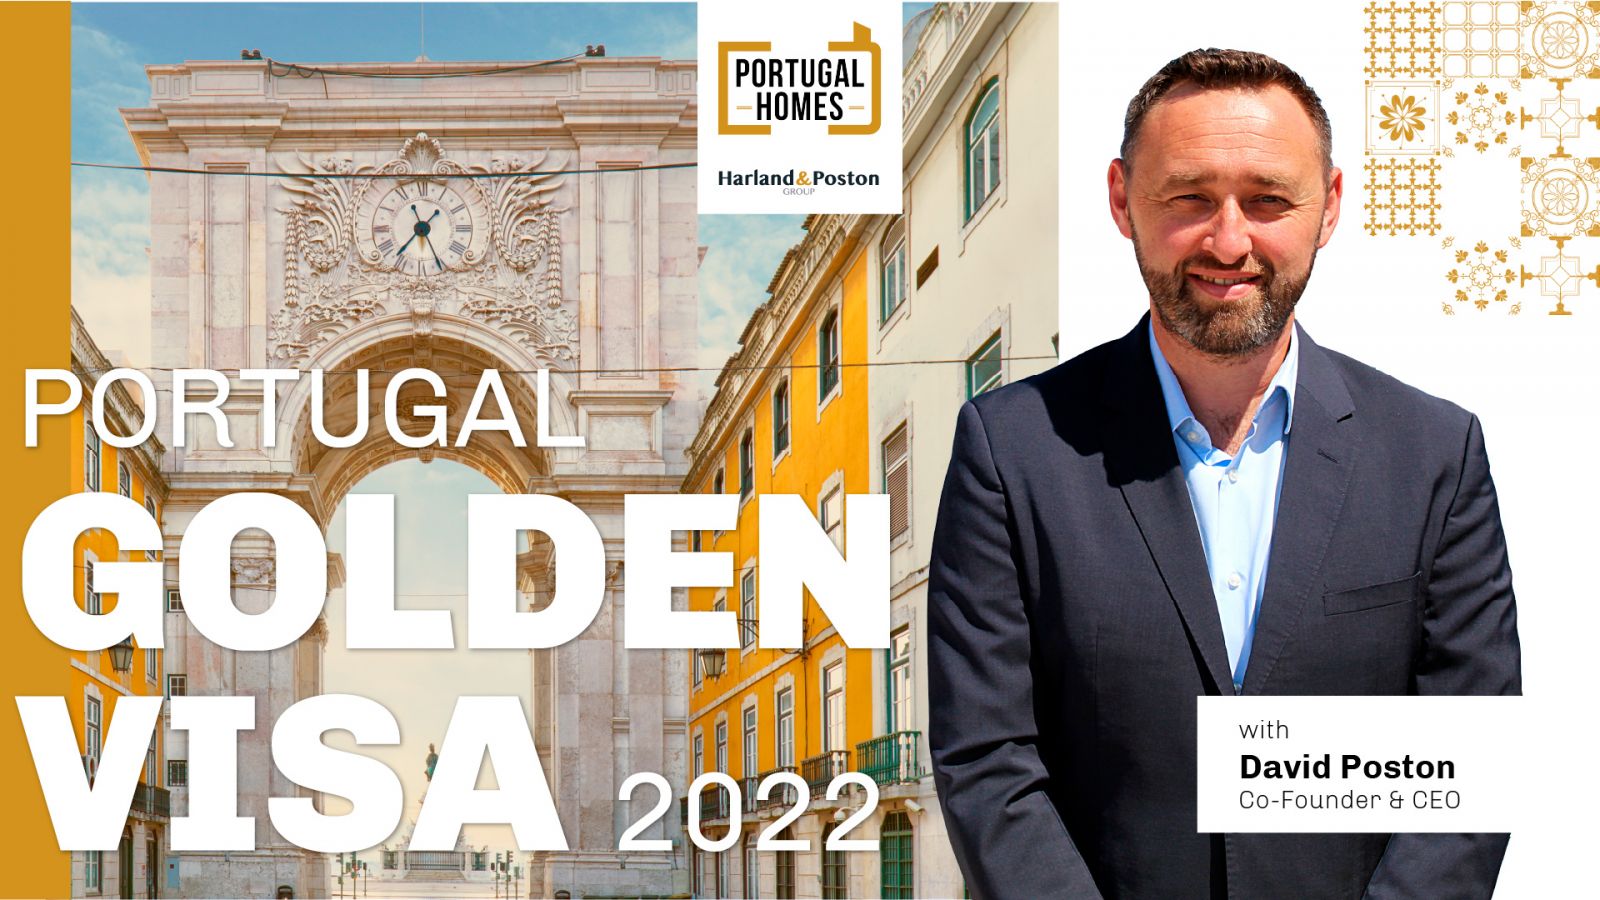 Portugal Golden Visa Programme for 2022